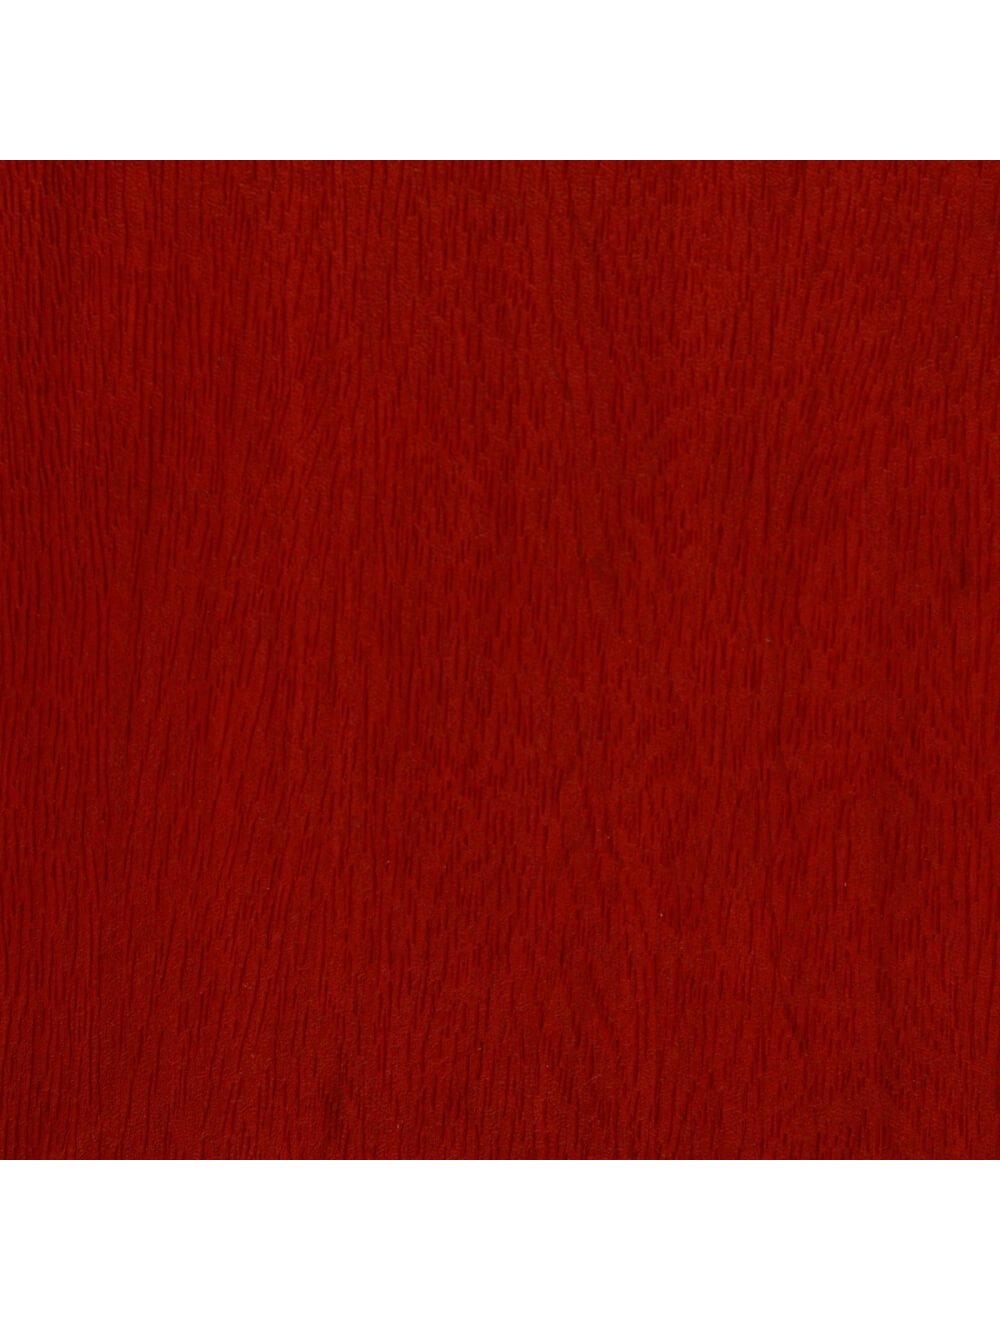 Échantillon de matériau à grains en bois rouge de Washington (E948)